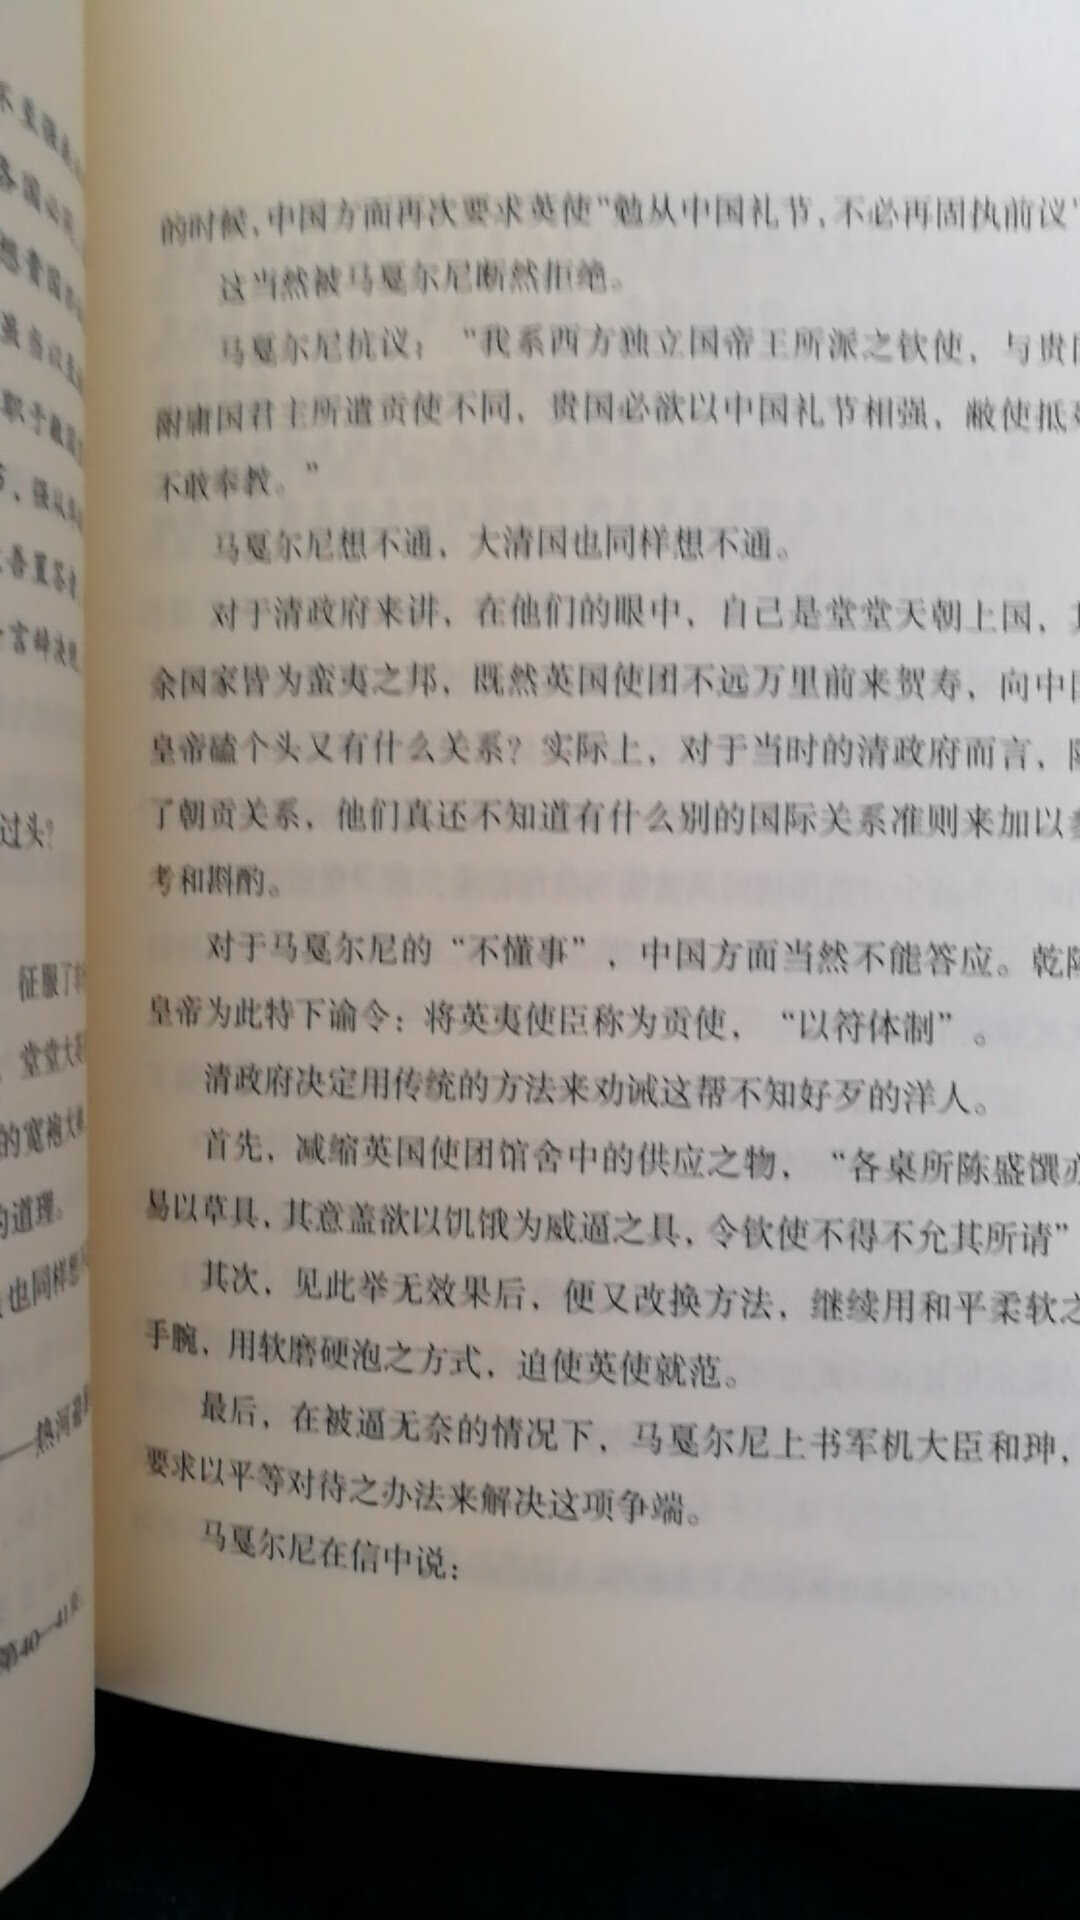 很喜欢历史的描写和深度解读，对中国历史的多重认识